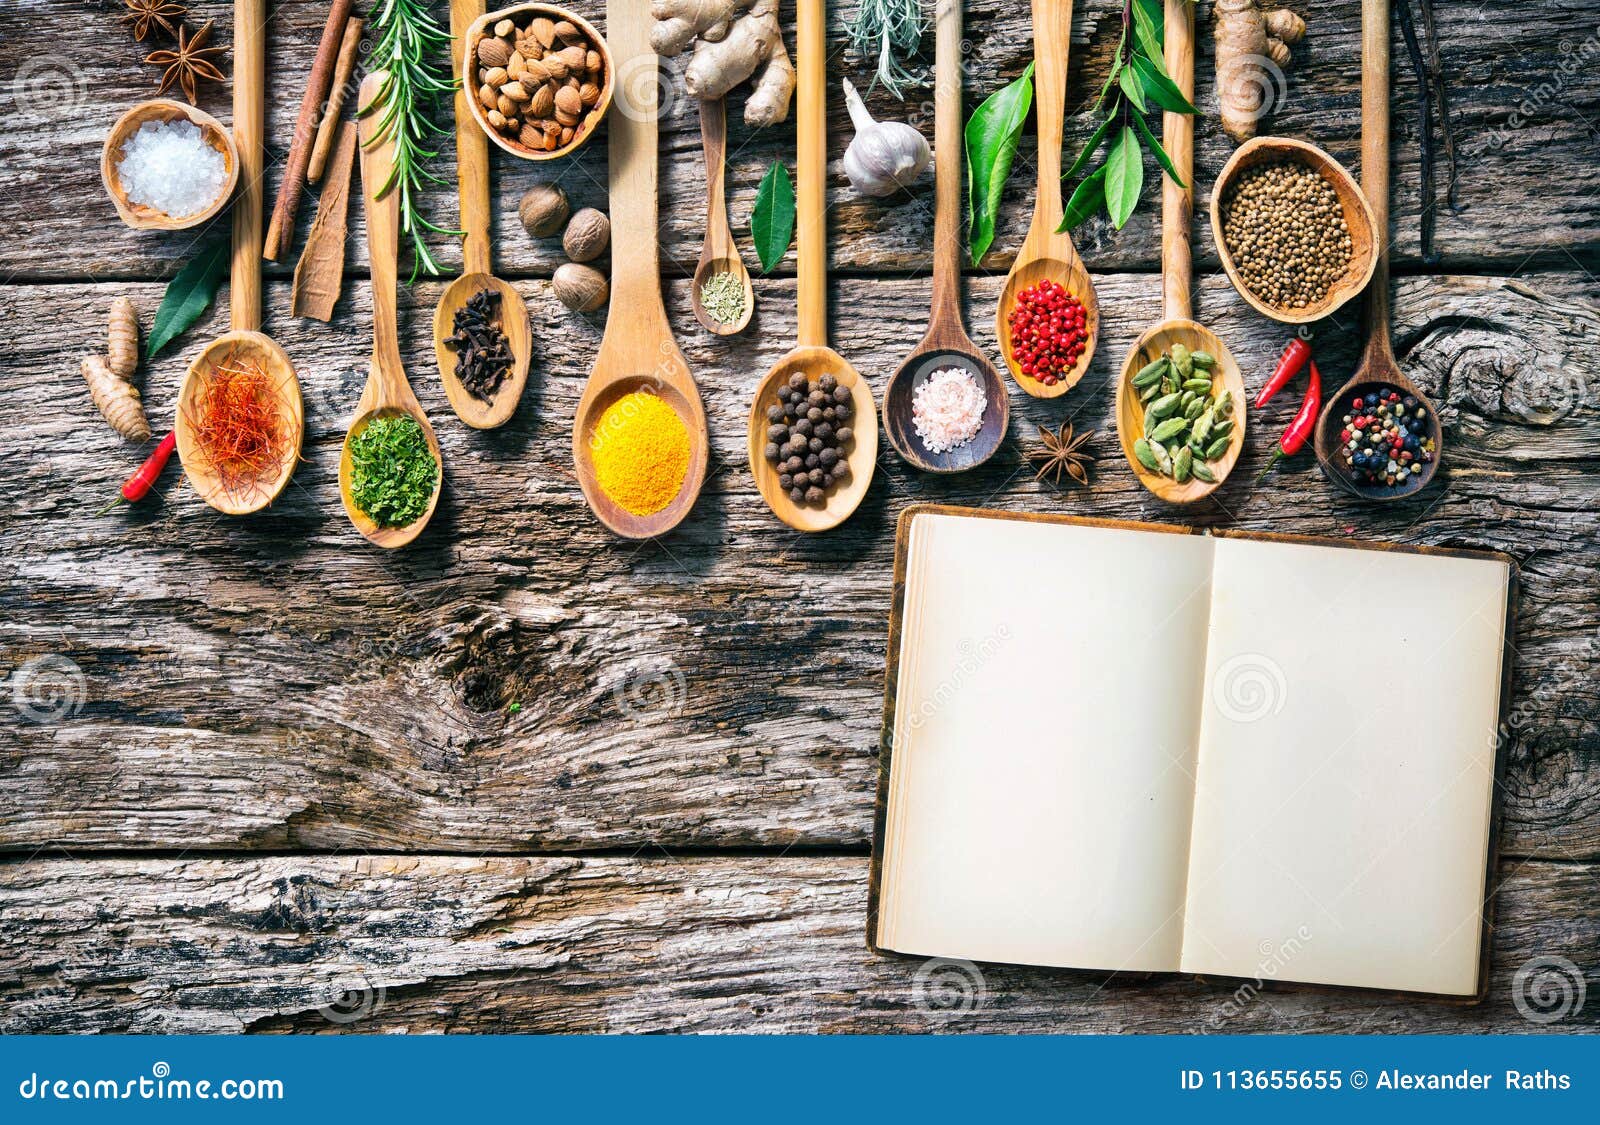 Selección de hierbas y especias para cocinar en cucharas